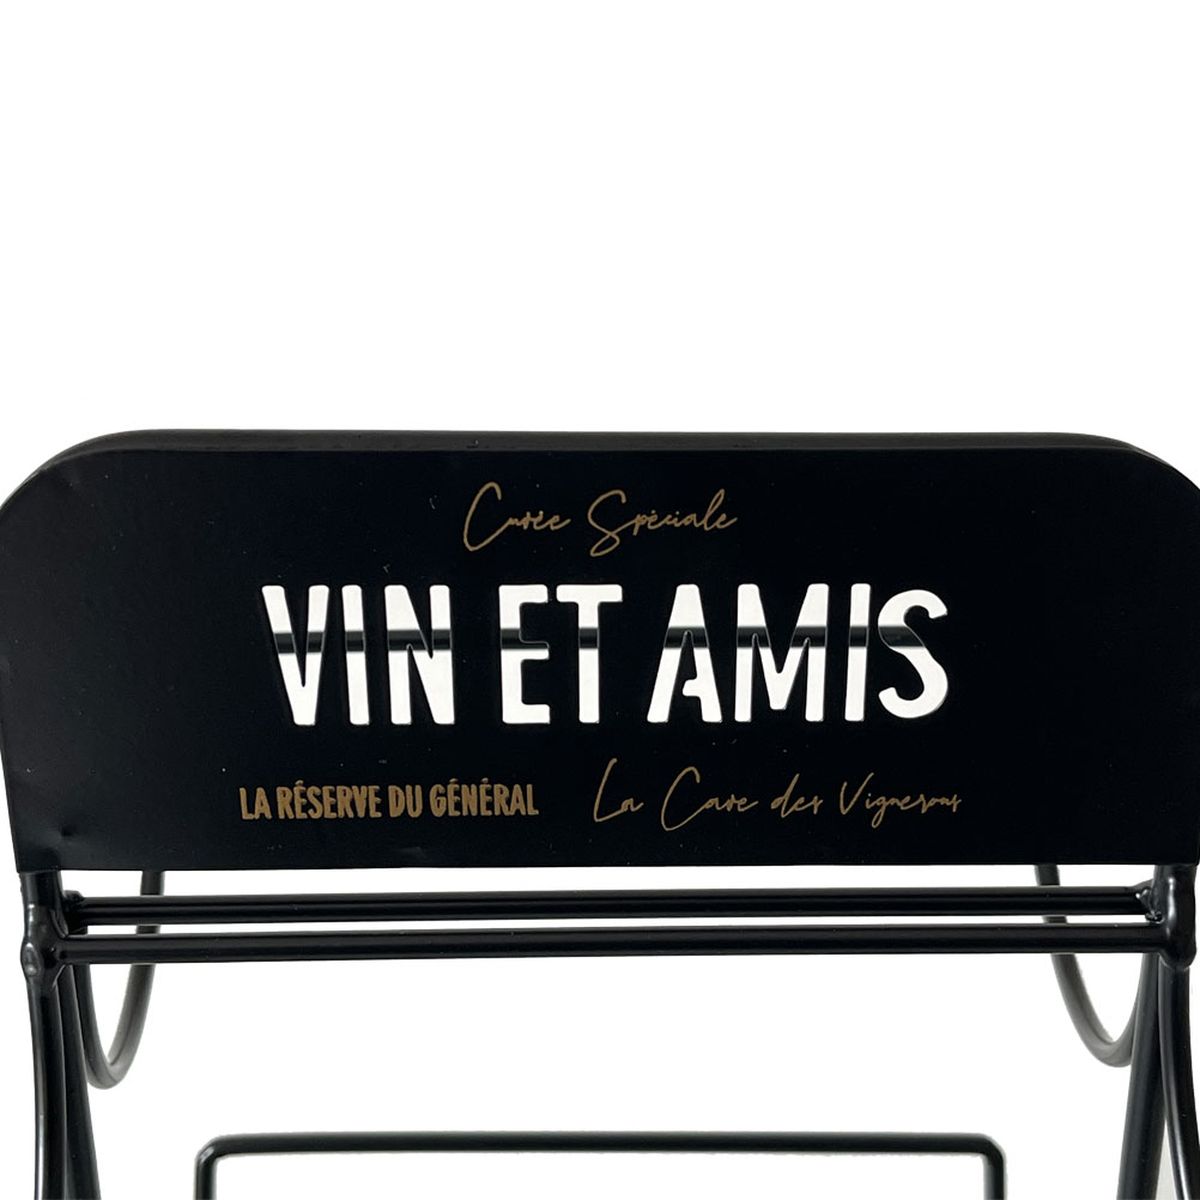 Bottle rack - Vin et Amis